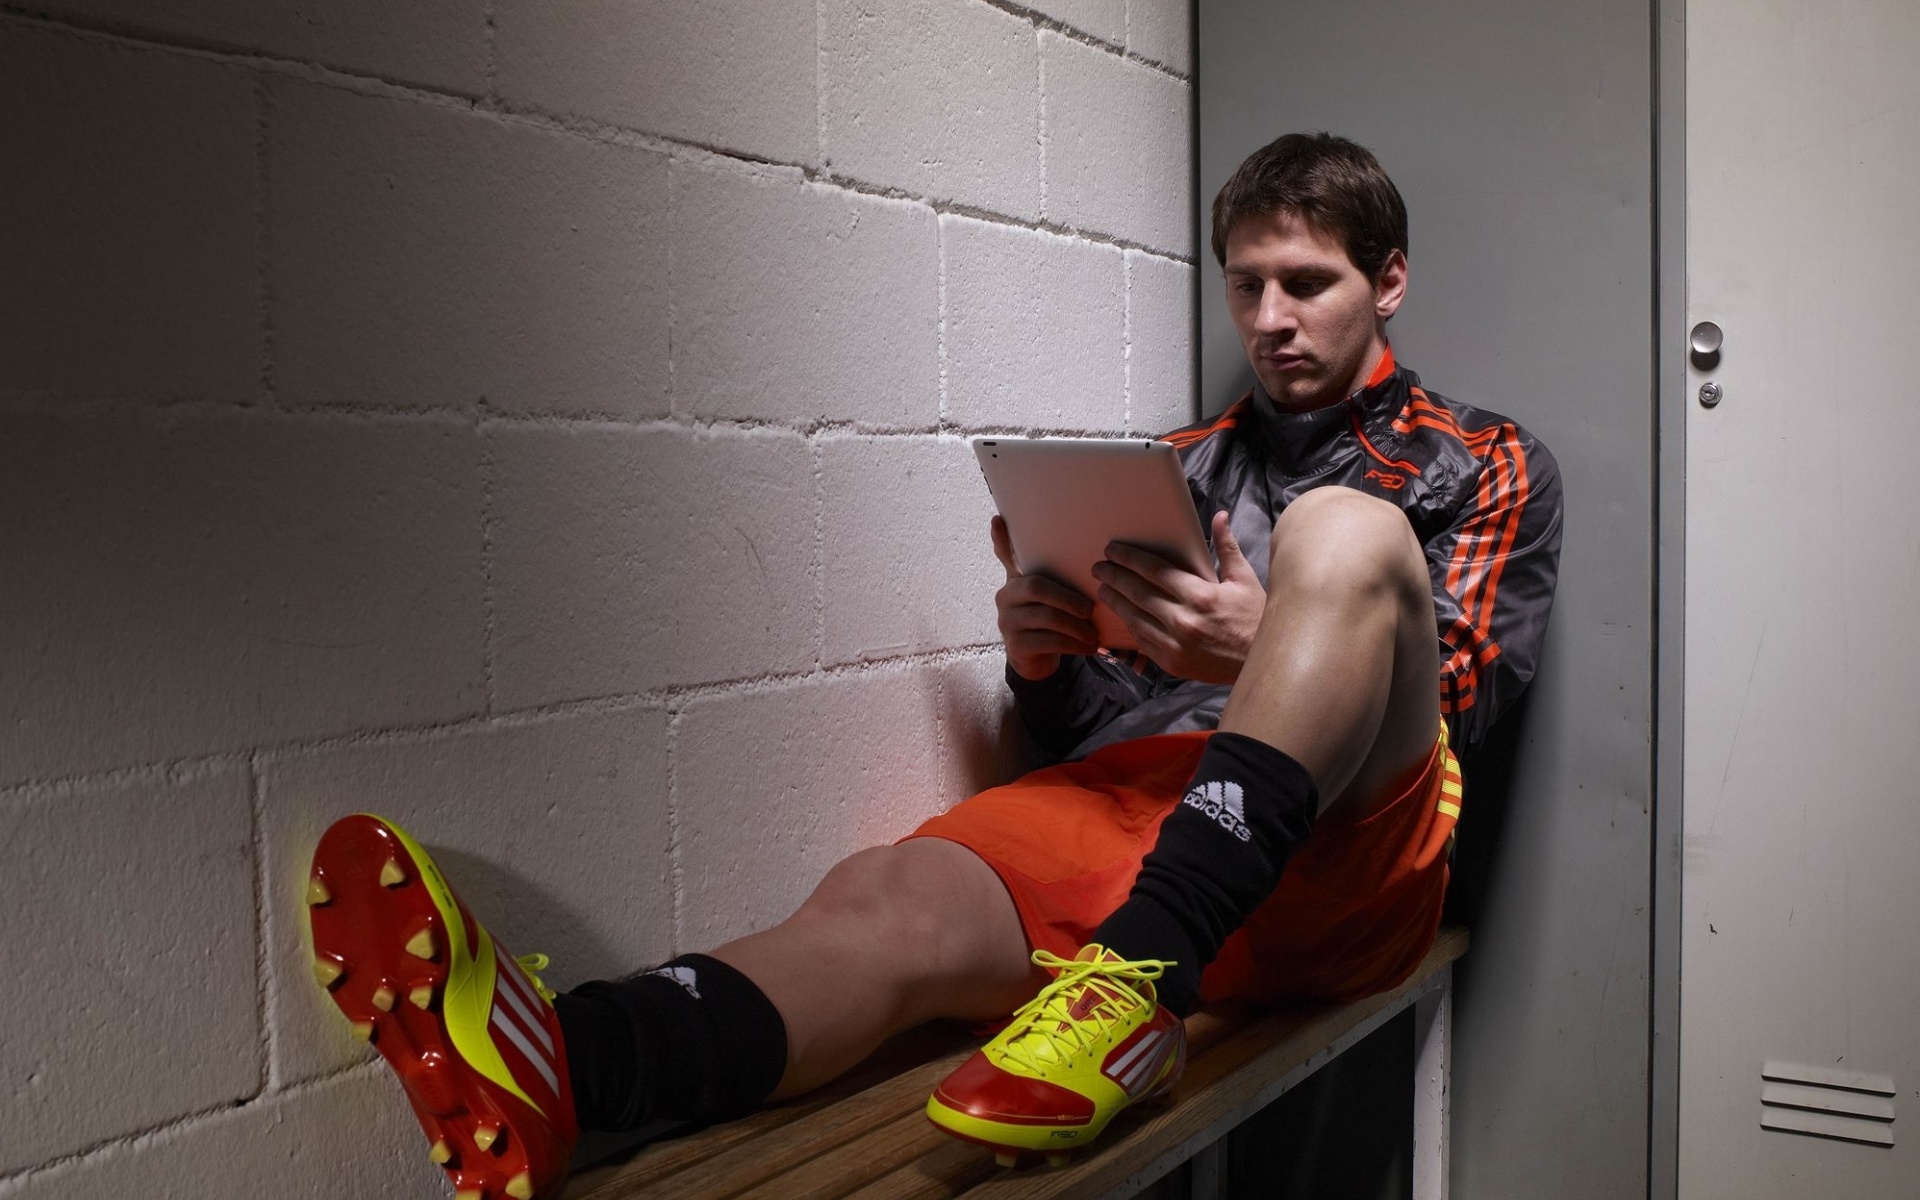 Известный футболист Лионель Месси / Lionel Messi сидит с планшетом в руках на лавке в раздевалке